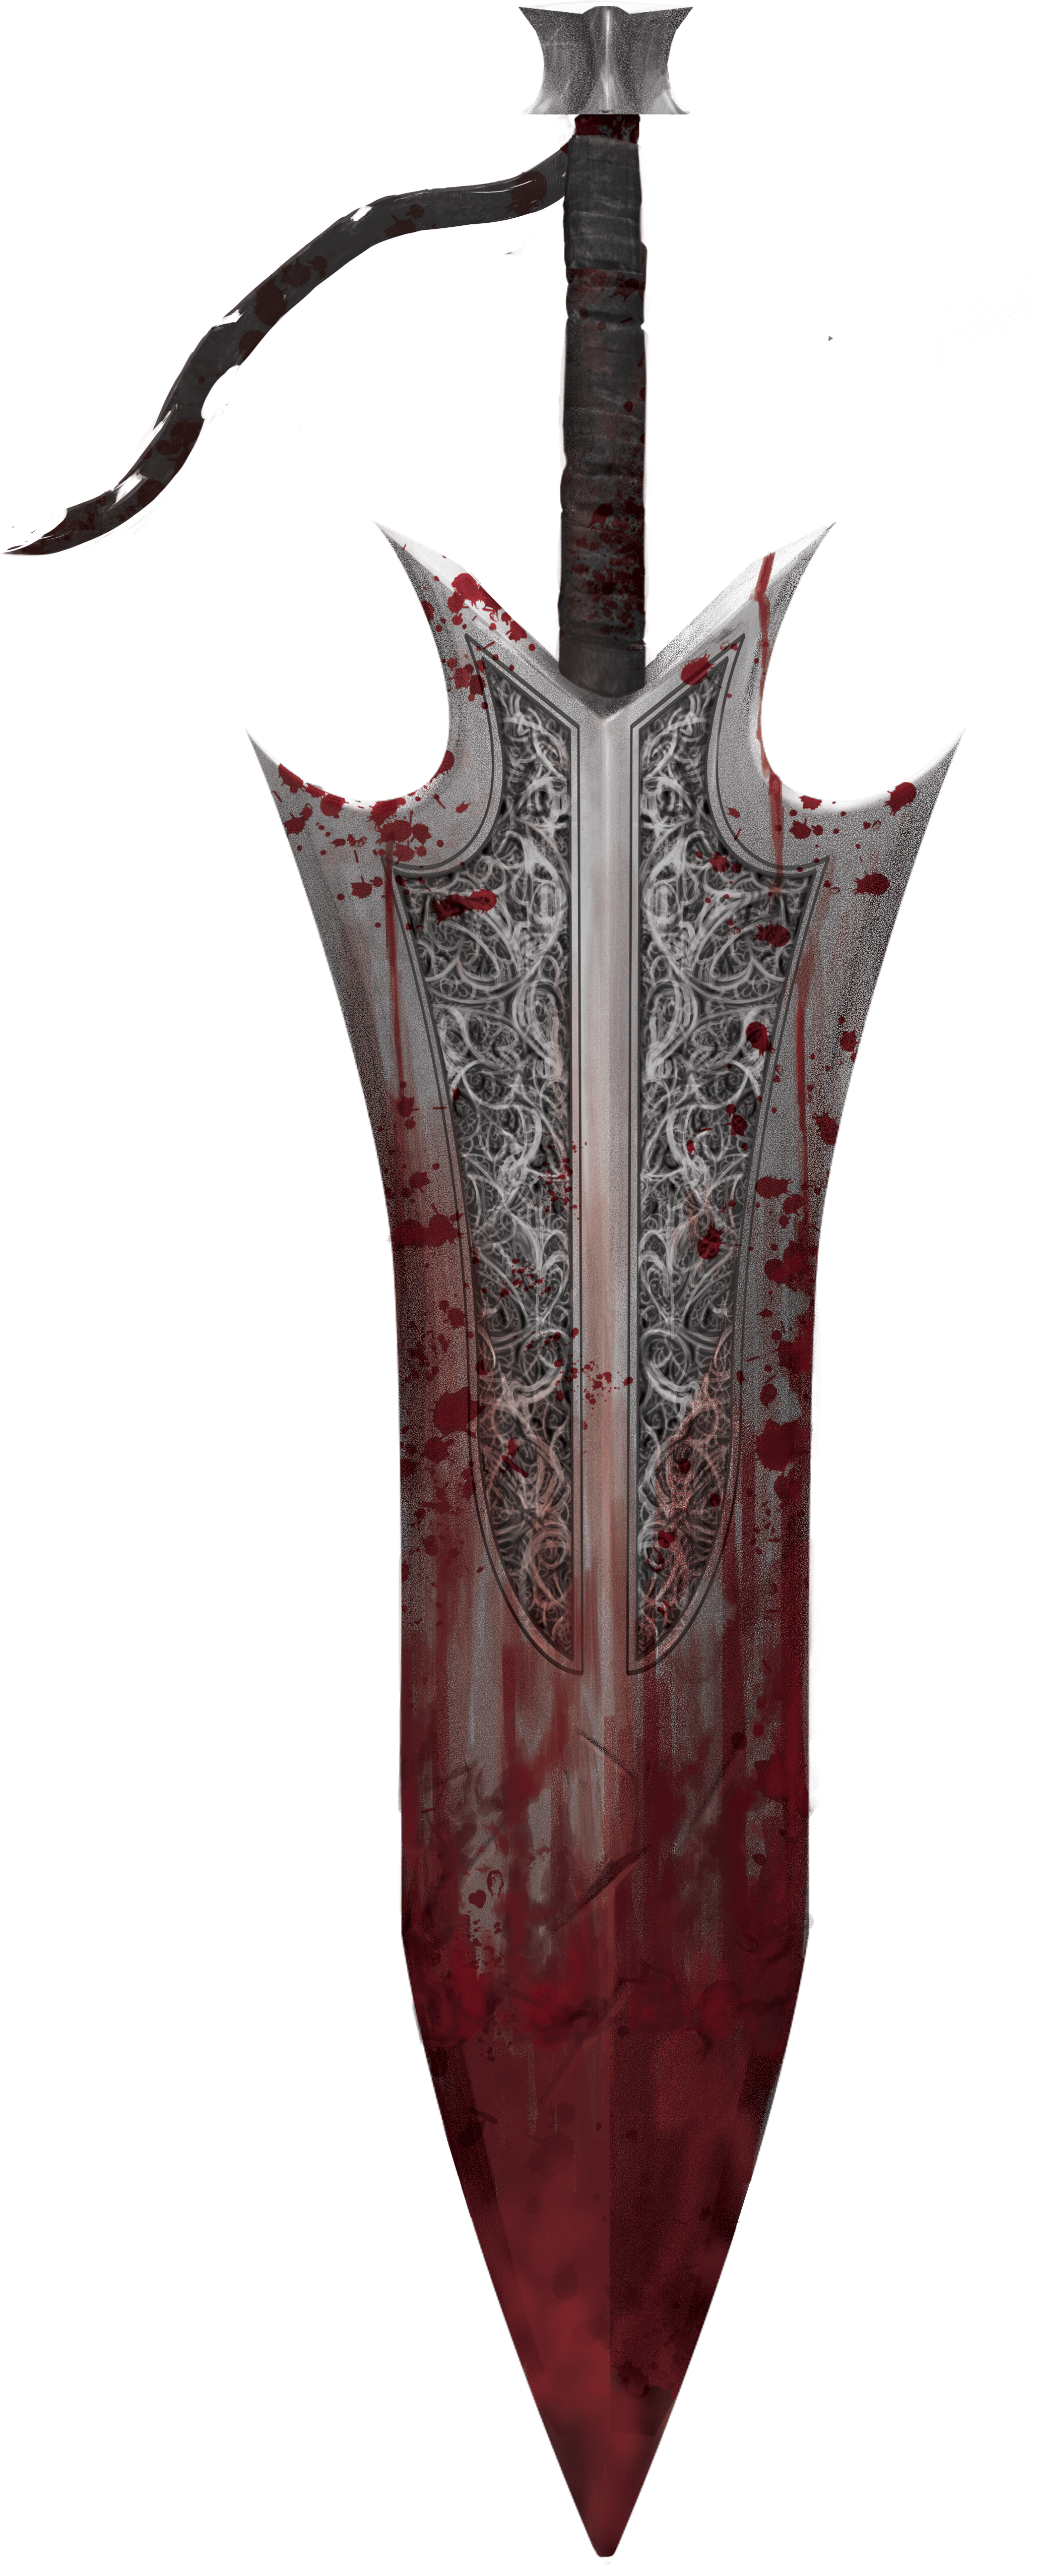 Blood Sword art by Mirko Mastrocinque